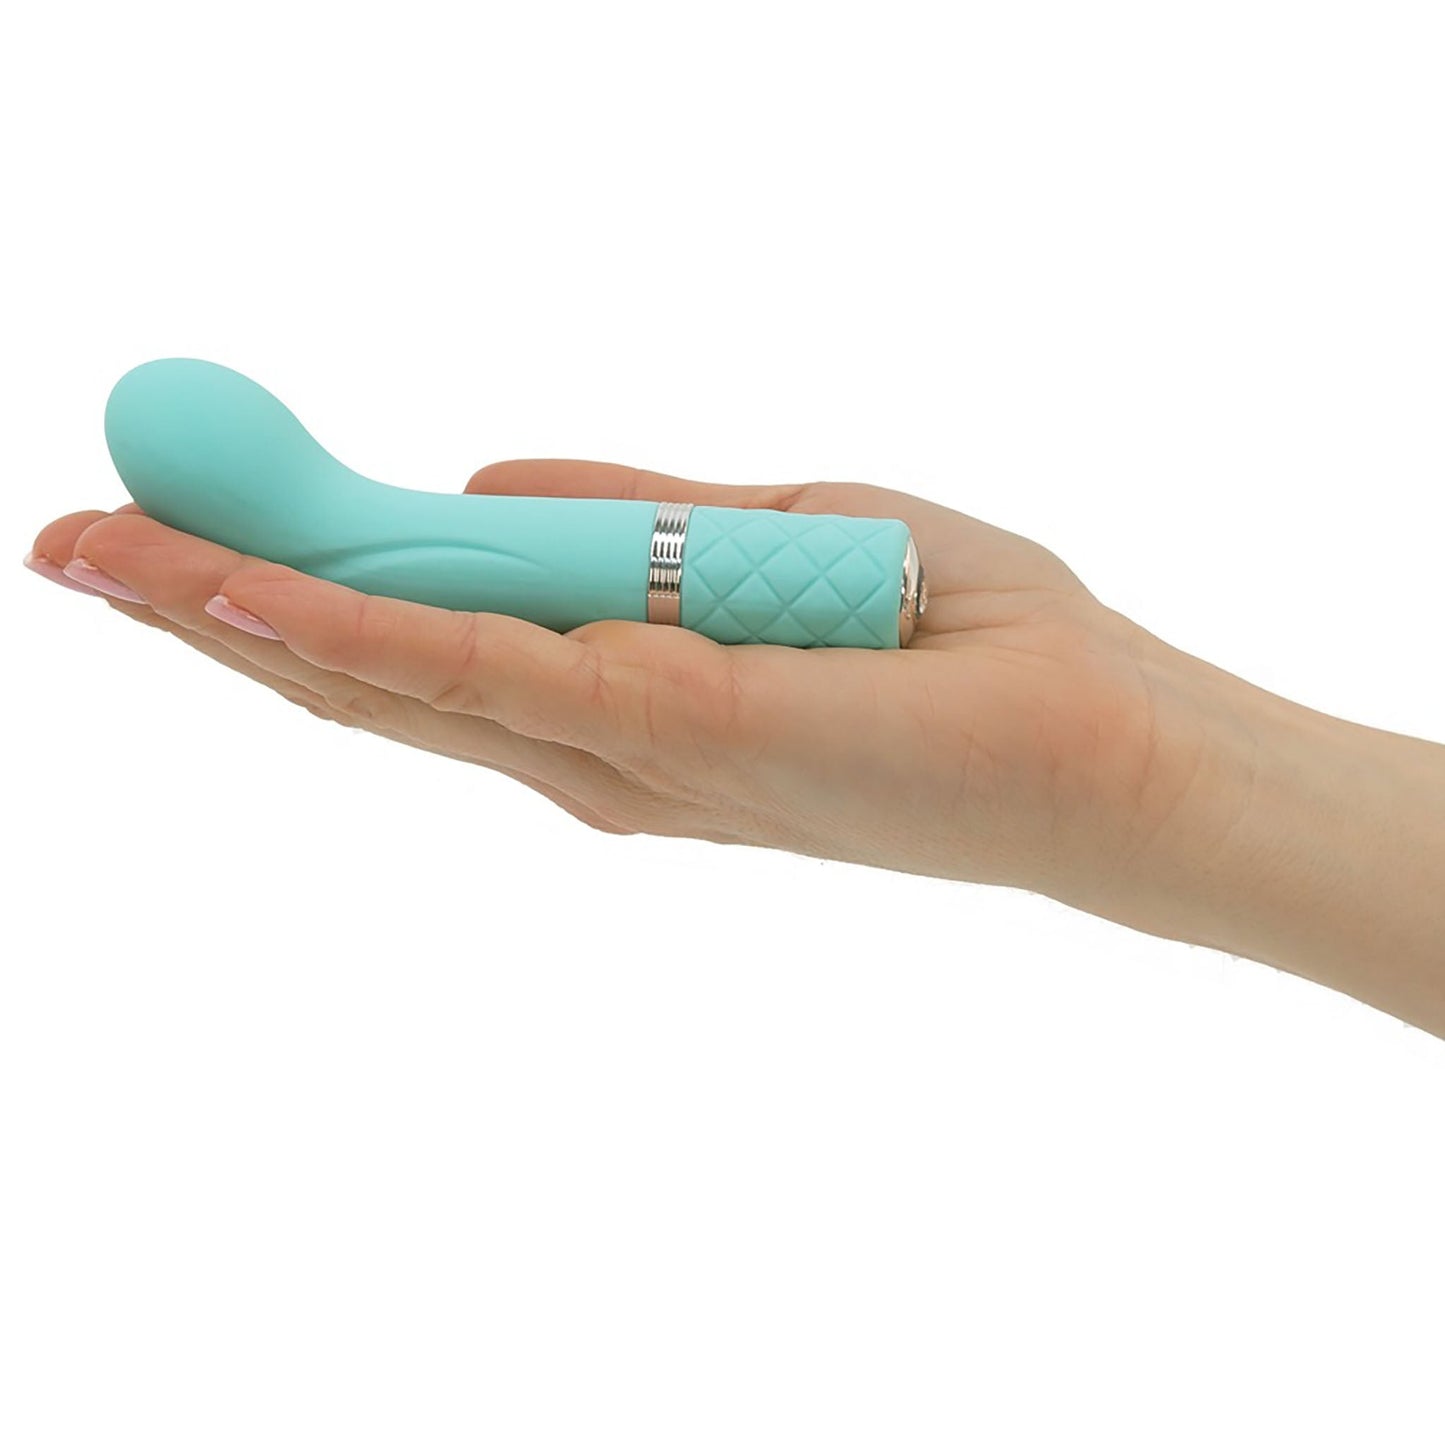 Racy Luxurius Mini Massager von Pillow Talk, ein G-Punkt Vibrator in türkis von einer Hand gehalten